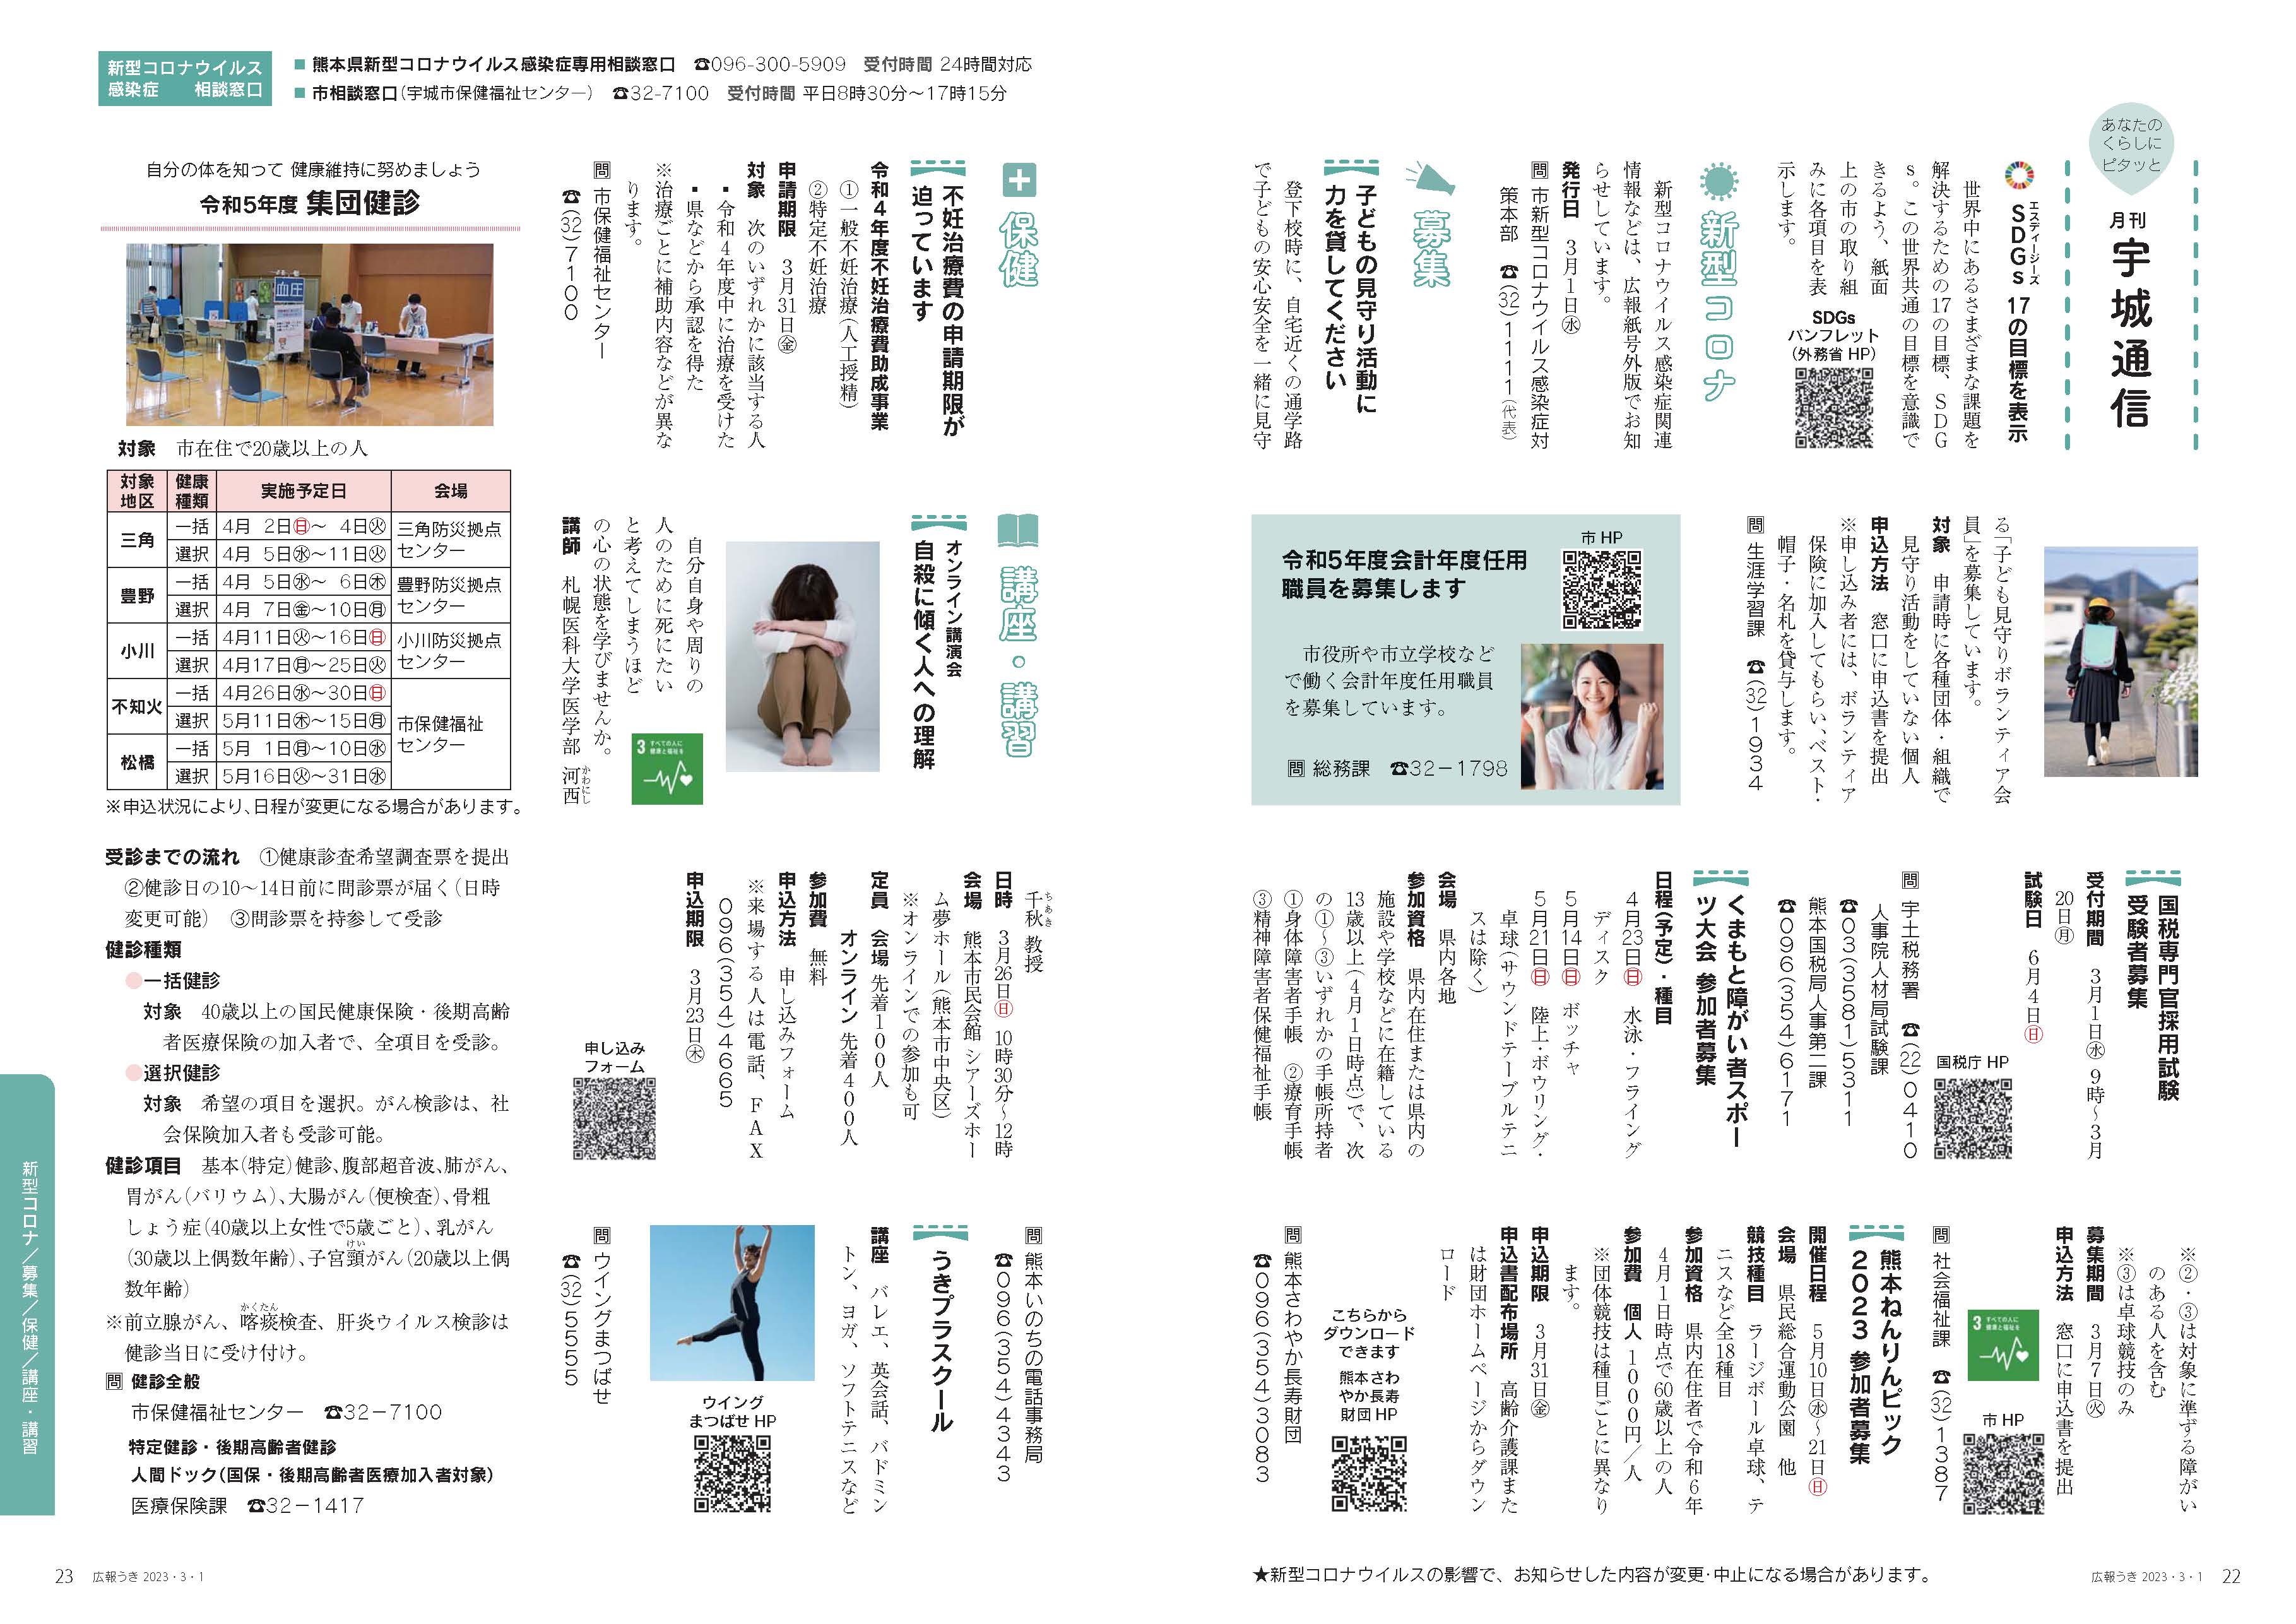 P22、P23 月刊 宇城通信のページ画像、詳細はPDFリンクを参照ください。